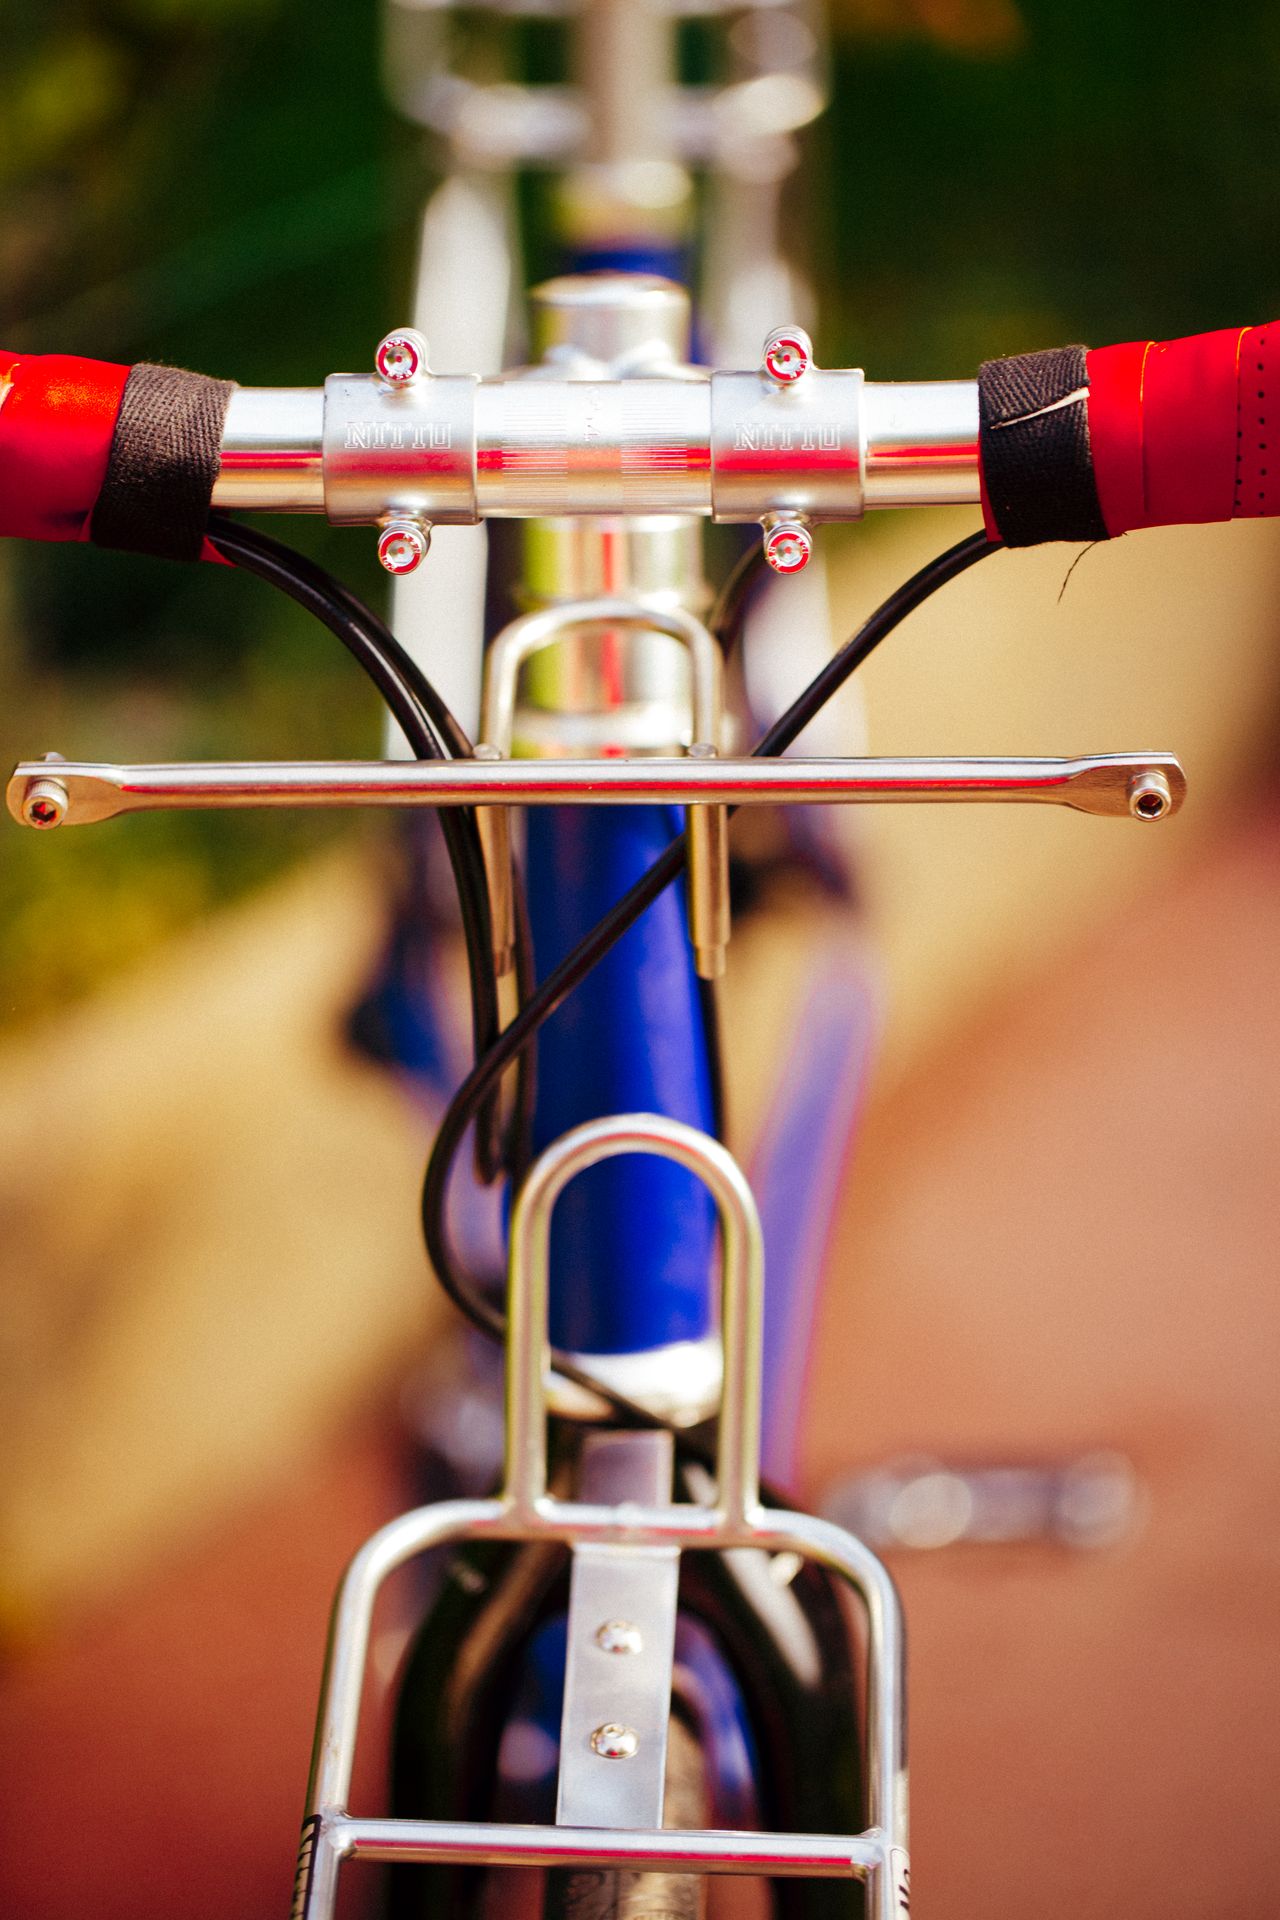 Magasin de cycles et atelier de réparation velo et montage vélo à la carte à Paris 13eme spécialisé dans le gravel et le voyage. randonneuse en acier legere